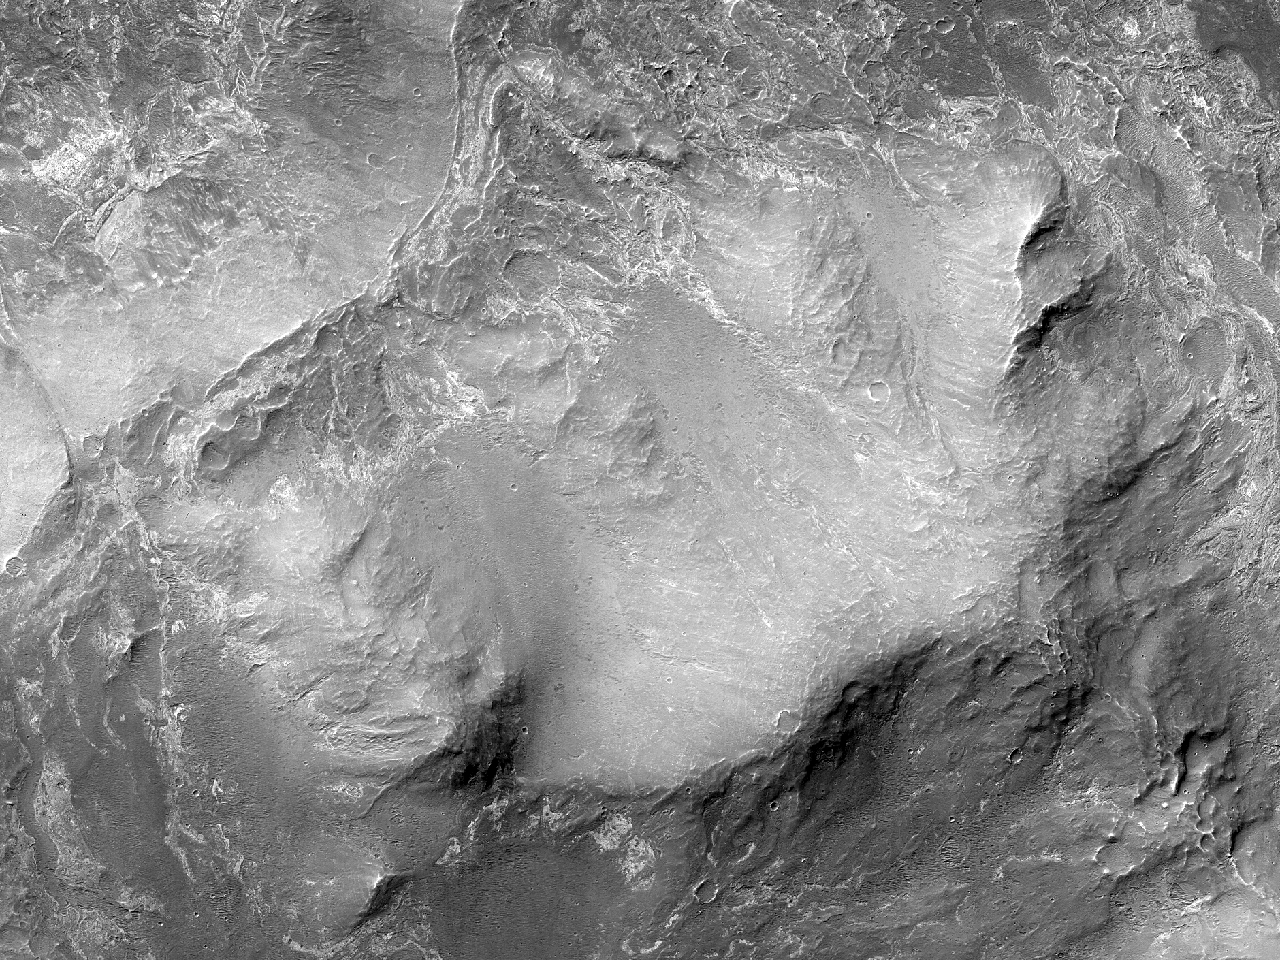 在西方梅拉斯查斯玛的环形凹陷 (Melas Chasma)